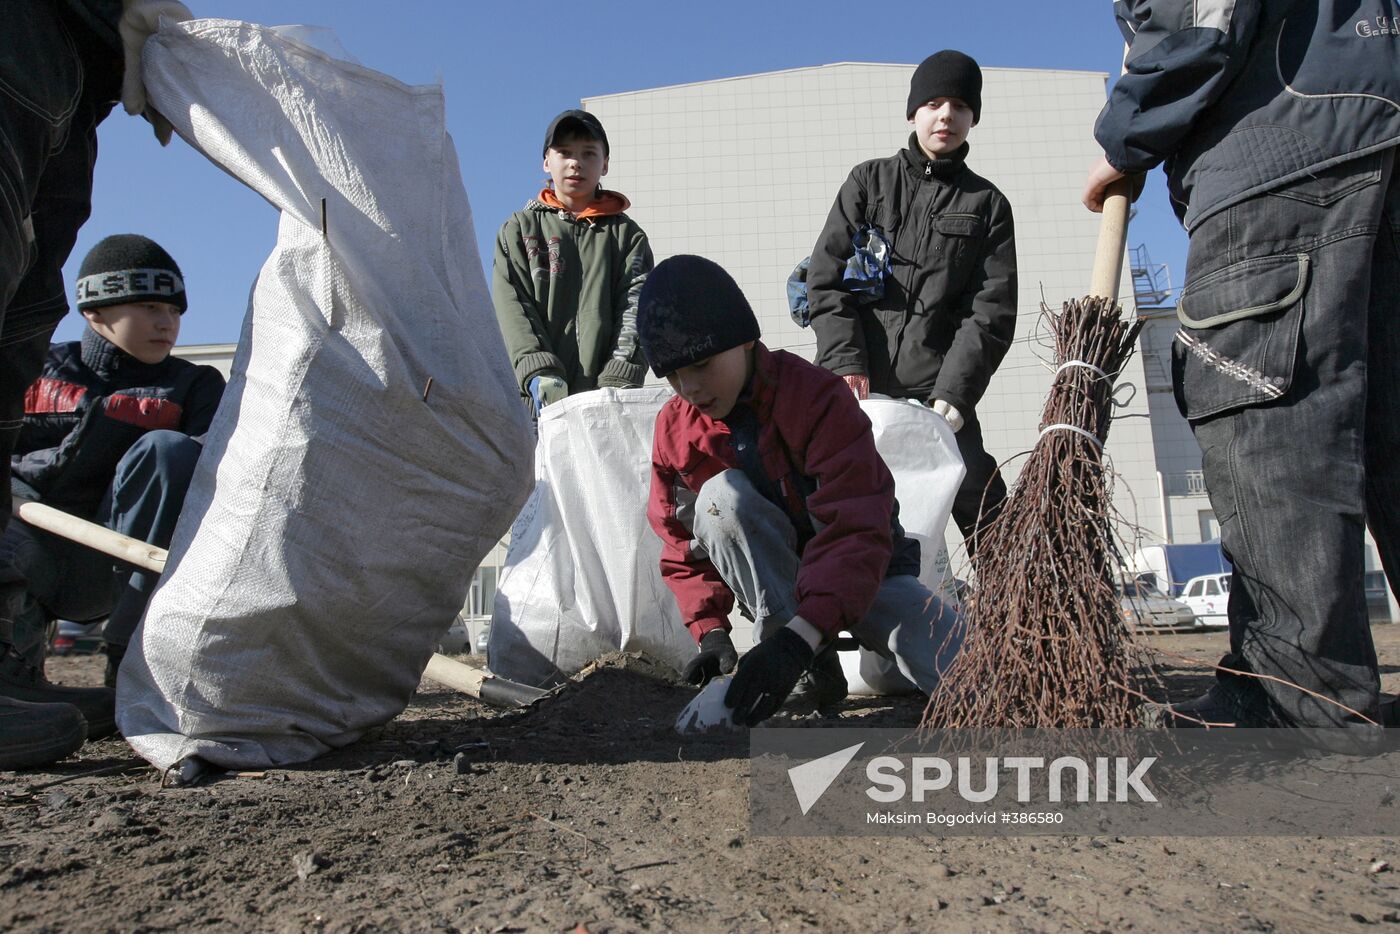 Volunteer clean-up day in Kazan